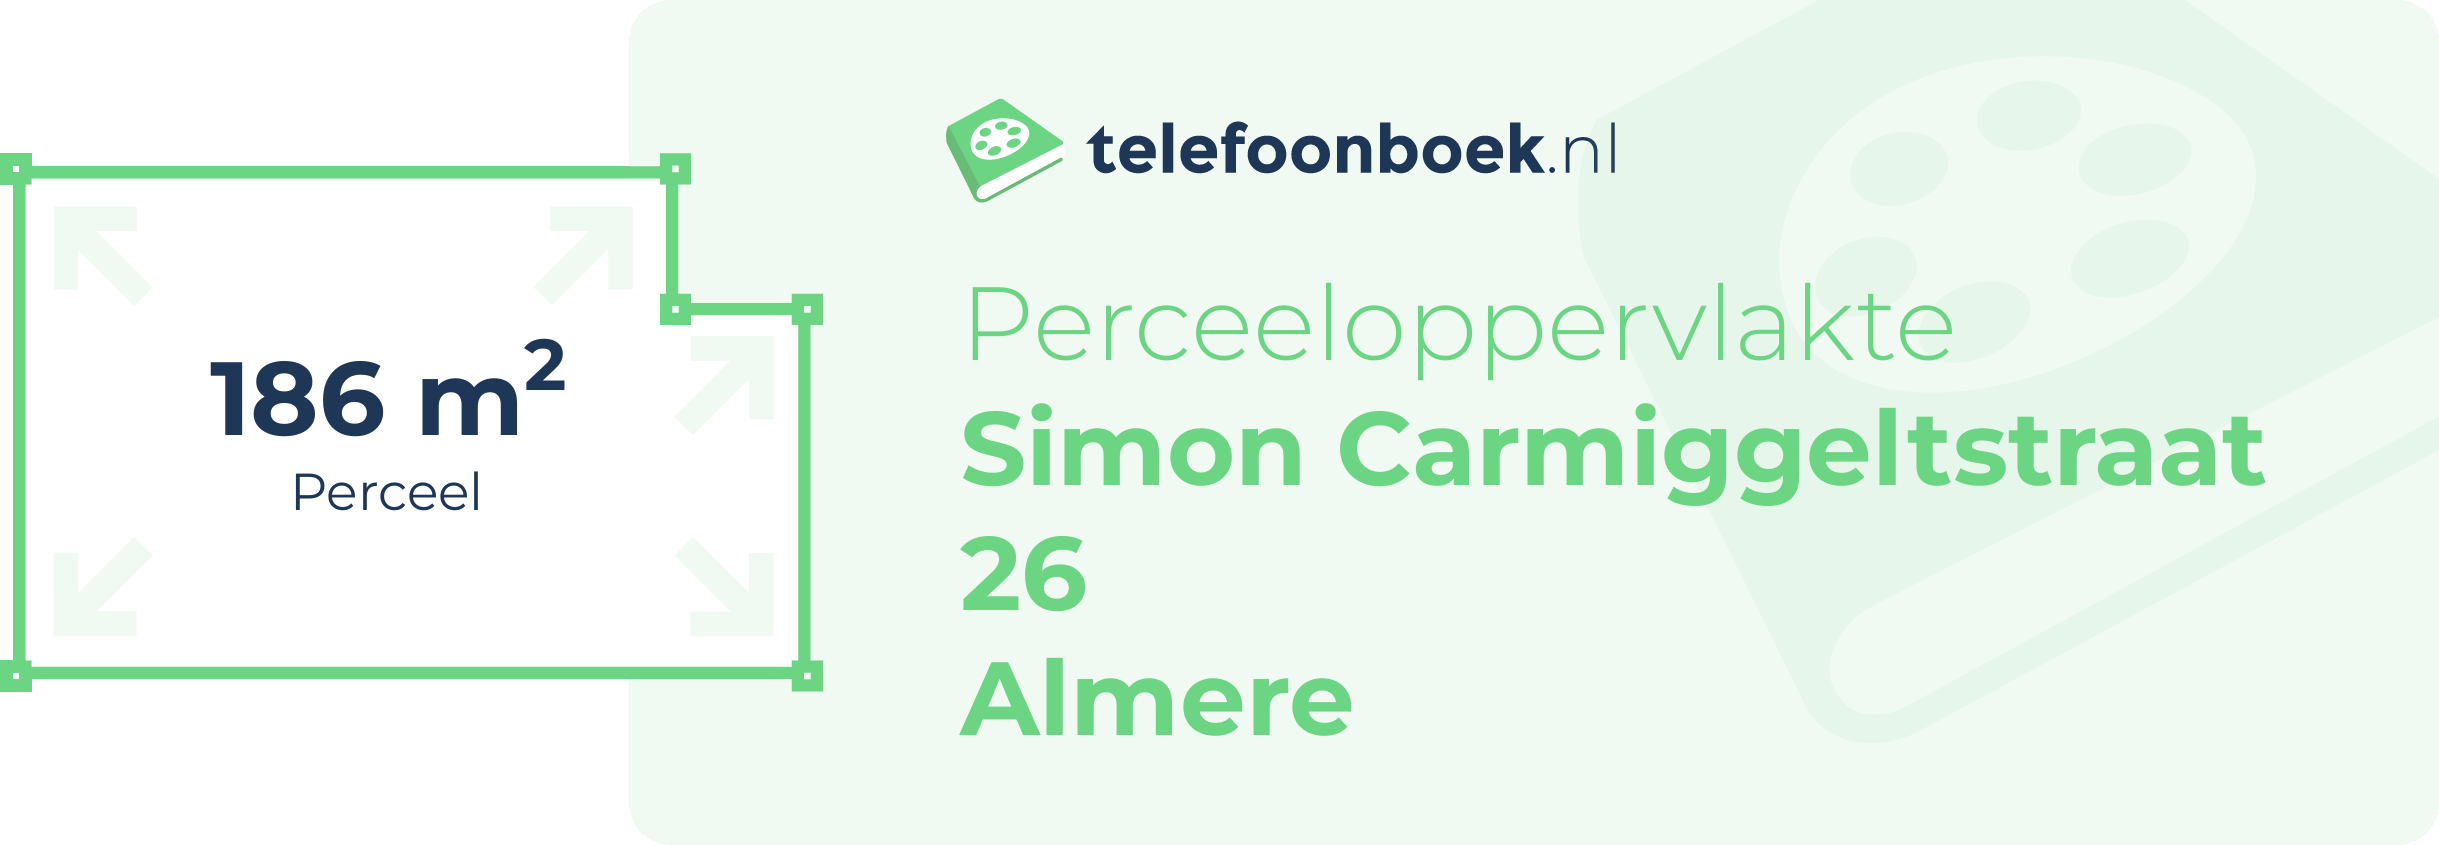 Perceeloppervlakte Simon Carmiggeltstraat 26 Almere